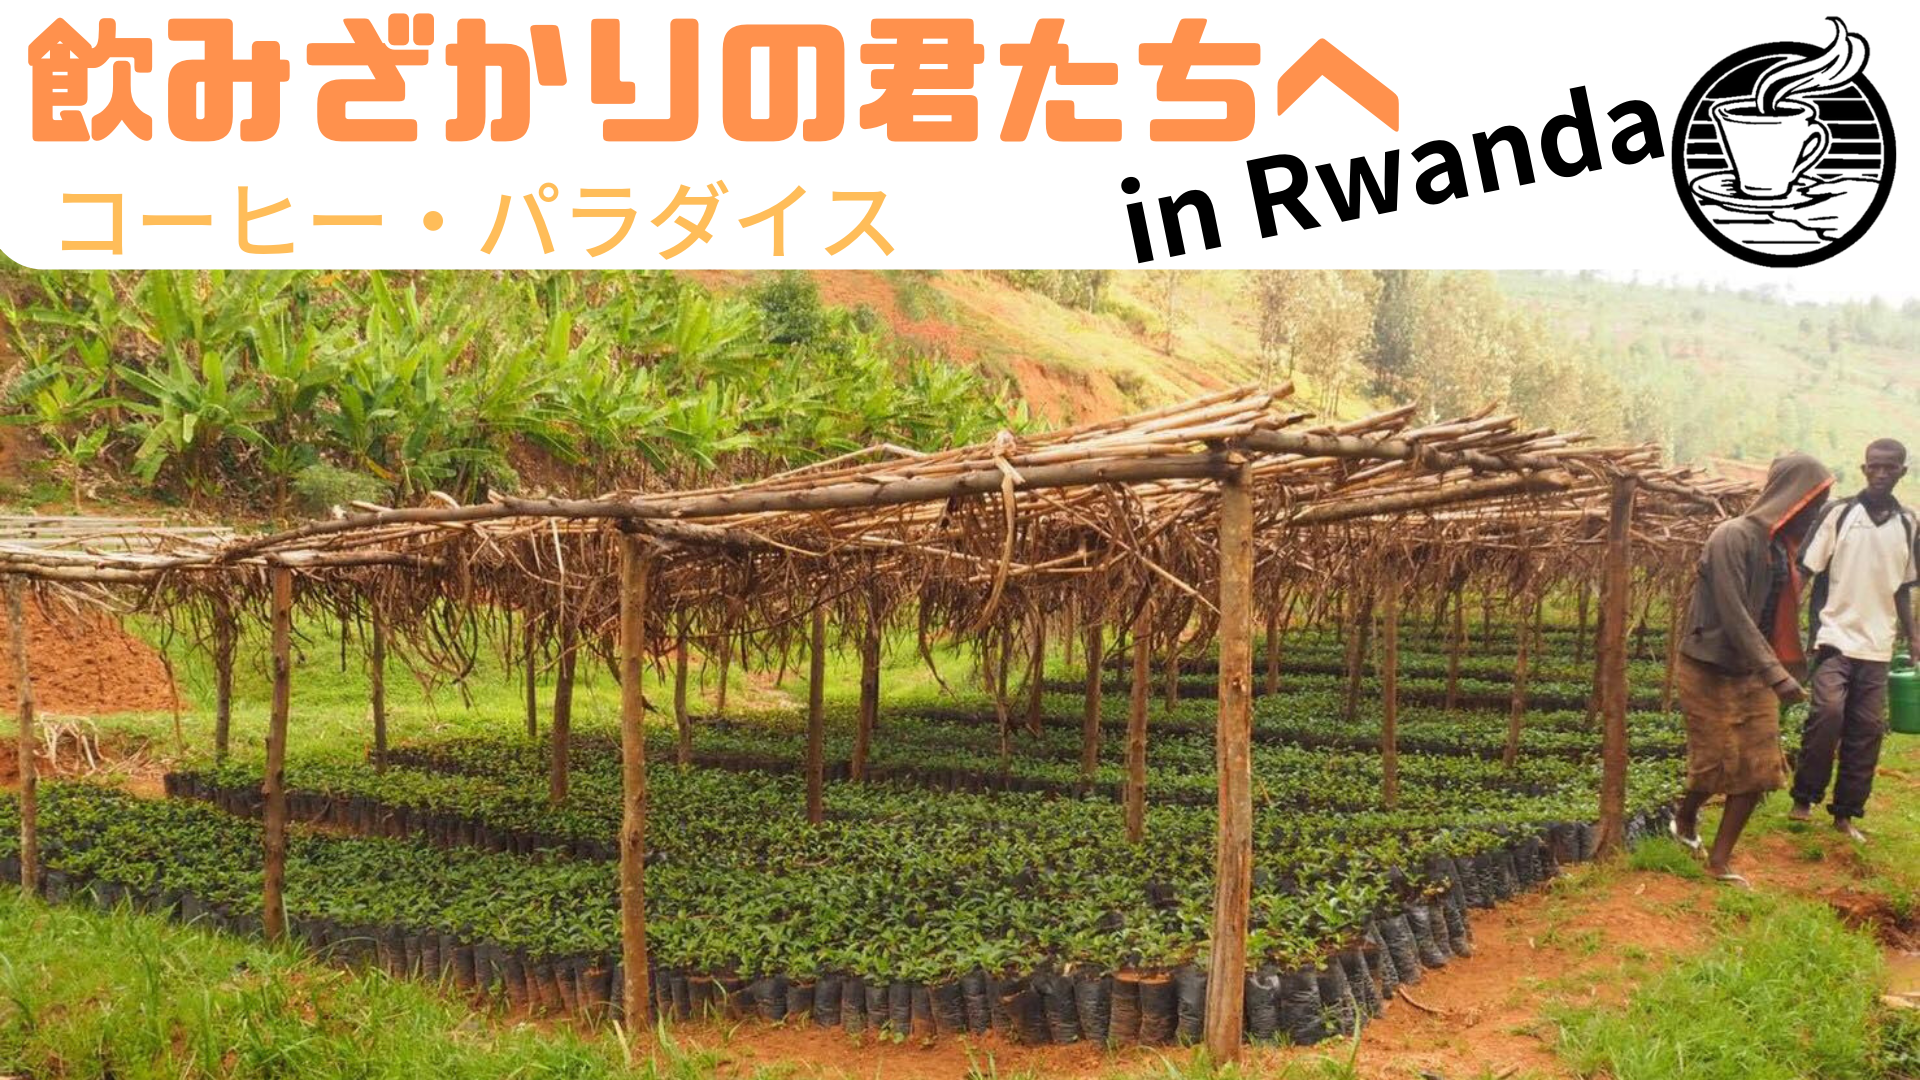 飲みざかりの君たちへ〜コーヒー☕️パラダイス〜 in Rwanda